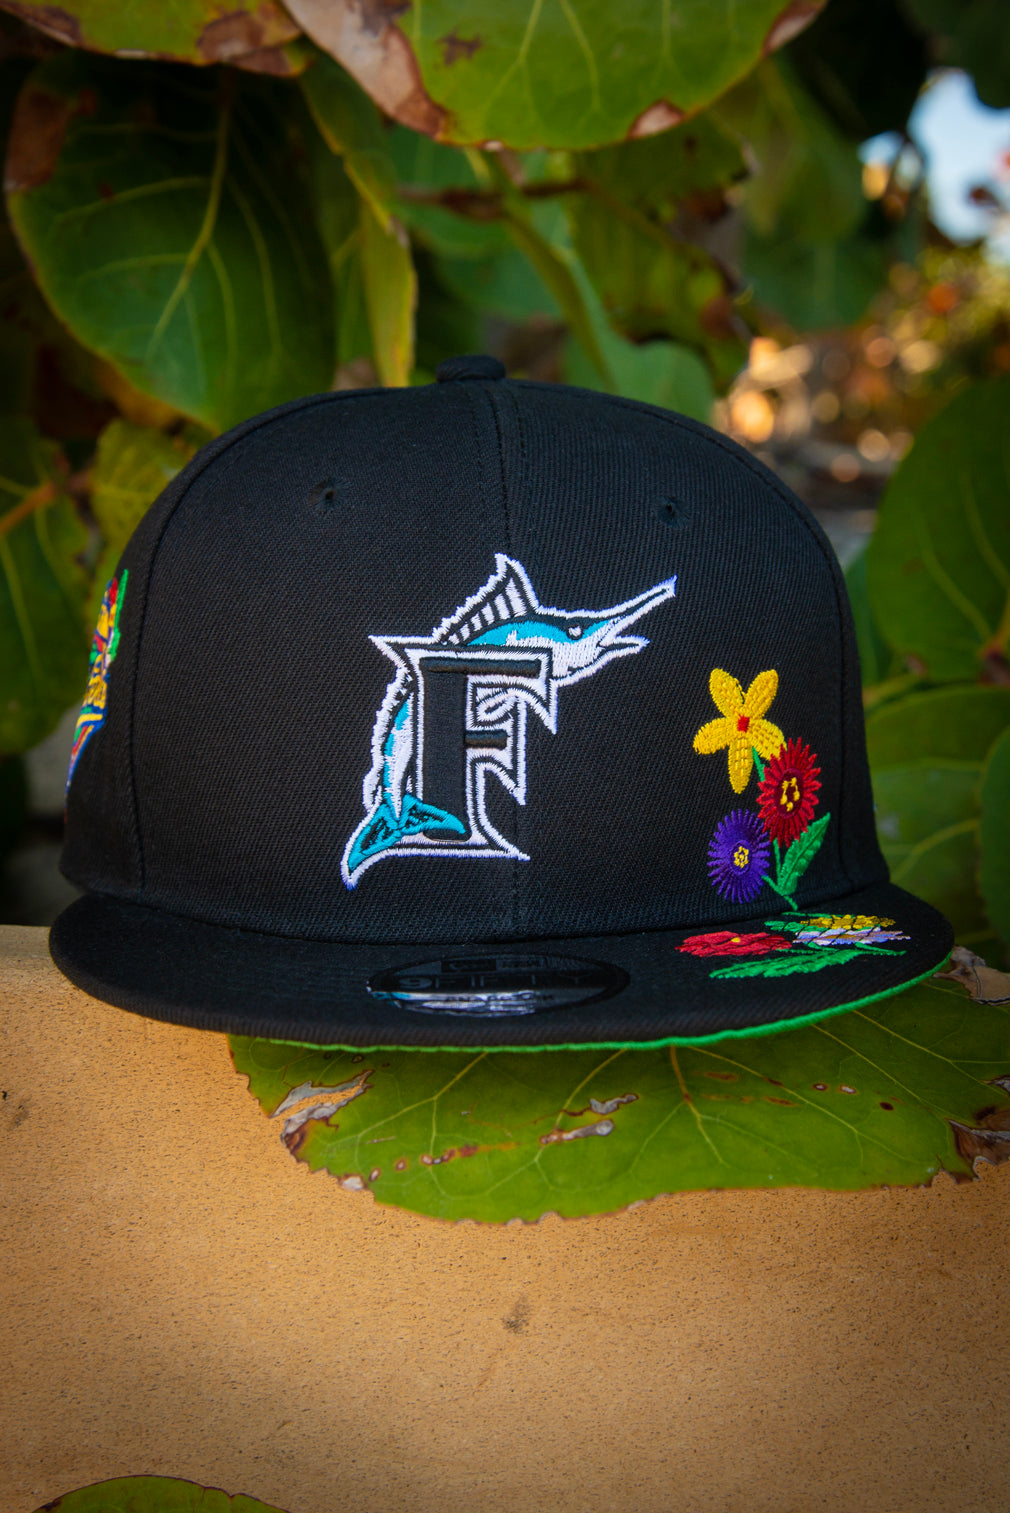 Miami Marlins Floral Arrangement 9Fifty New Era Fits Snapback Hat